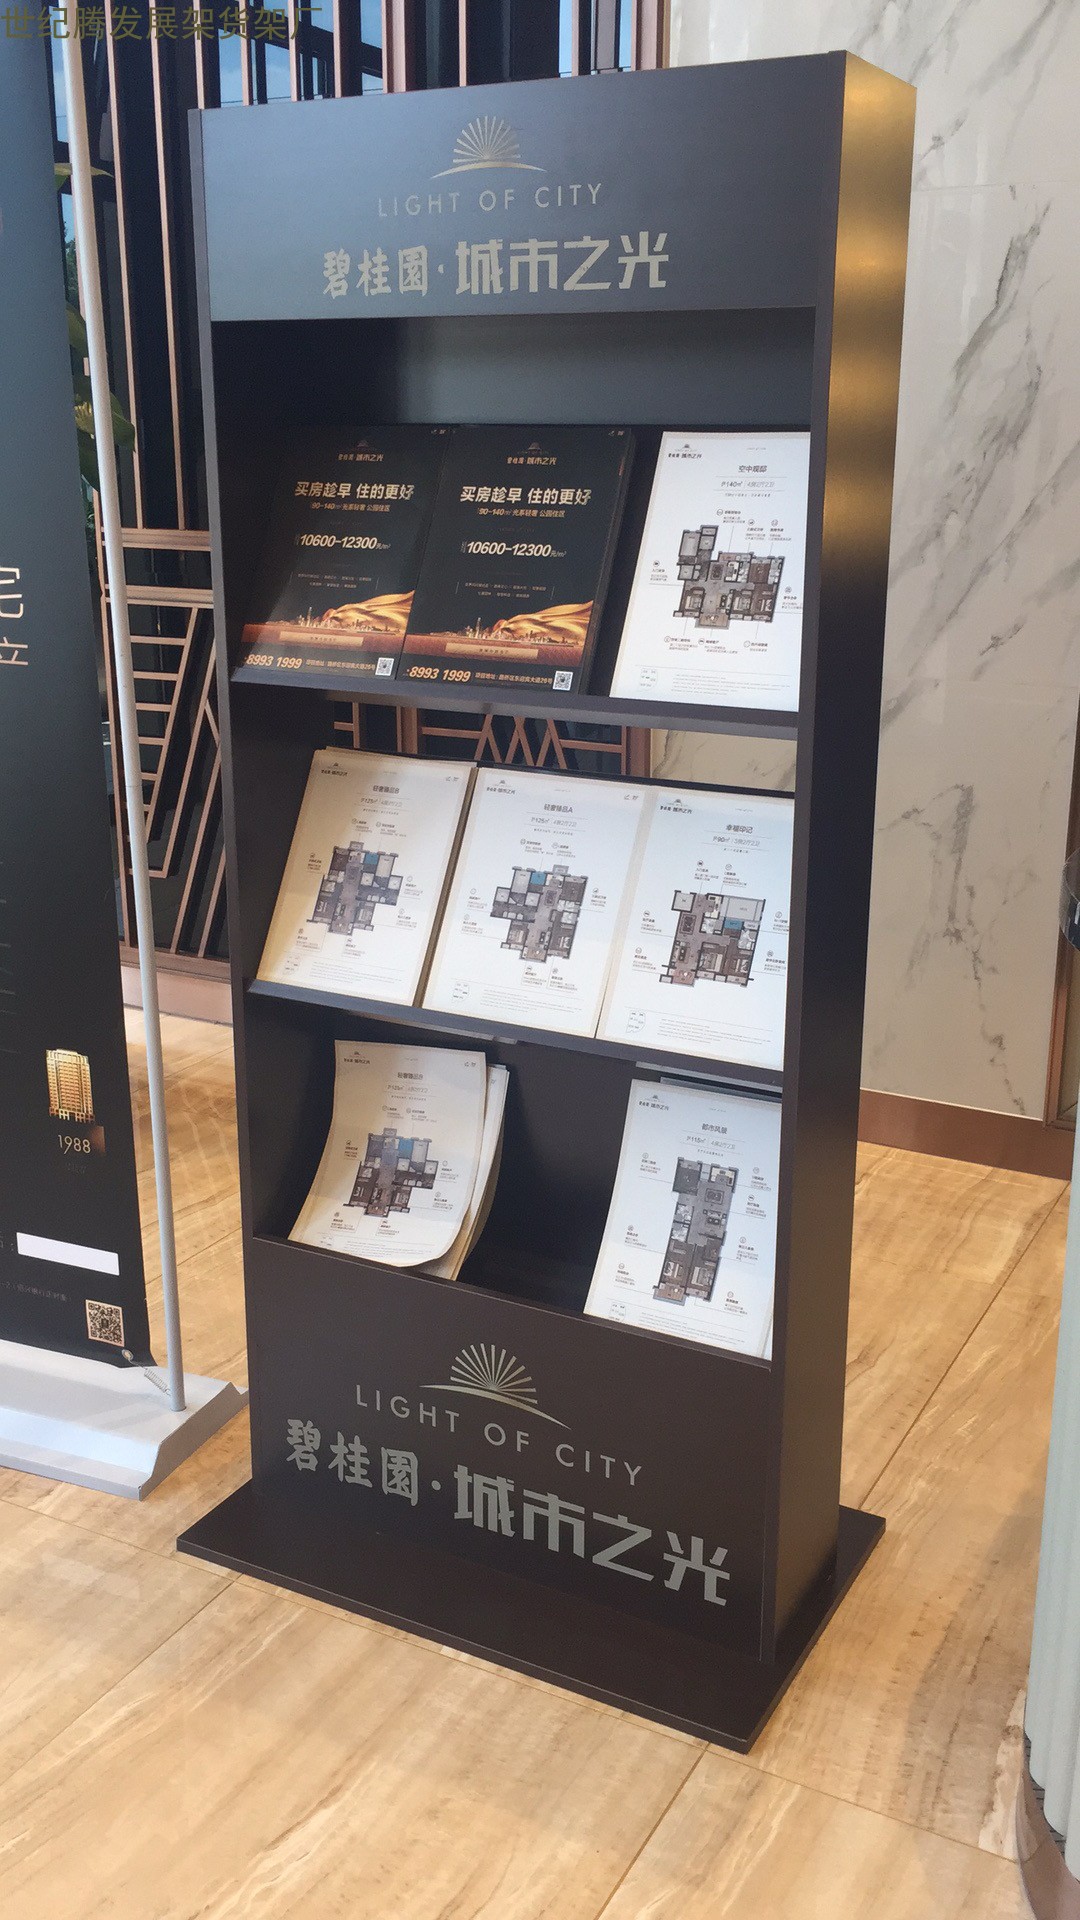 北京户型图展示架  银行邮局宣传册架 旅游传媒广告公司杂志架 酒店大厅木质资料架图片